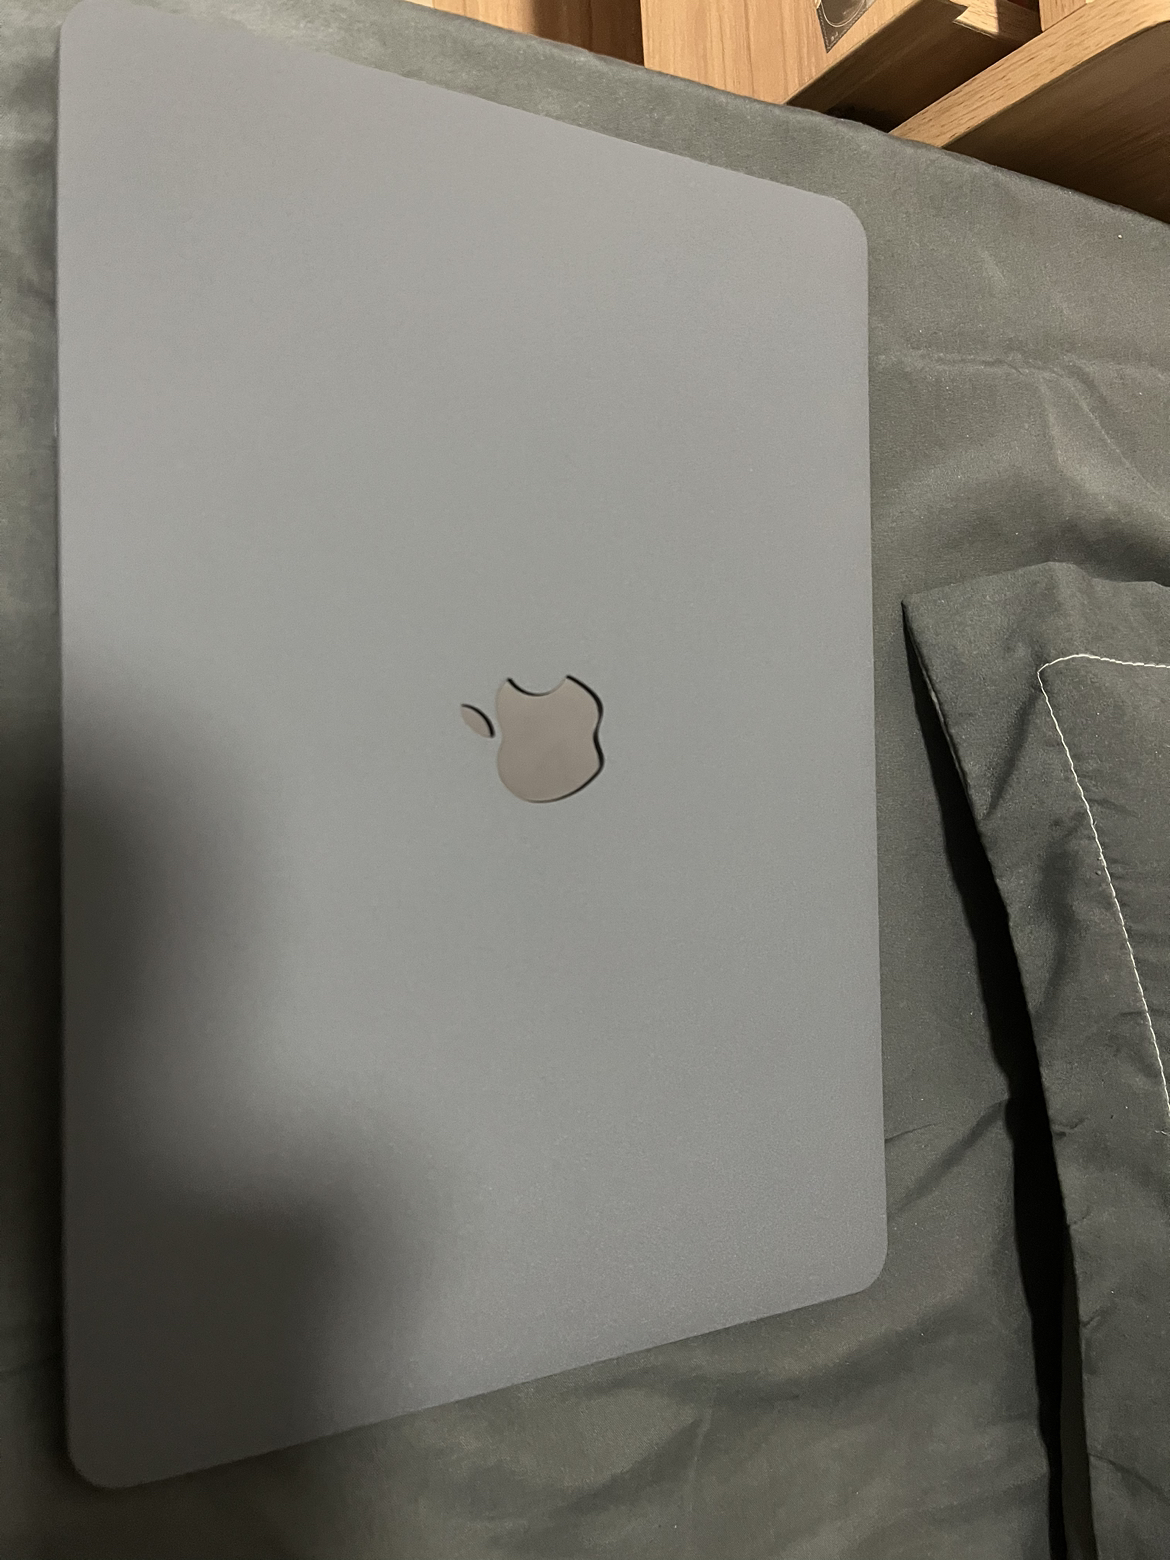 2020款AppleMacBookAir 13.3寸 8核M1芯片(7核图形处理器) 8G 256G SSD 深空灰 苹果笔记本电脑 MGN63CH/A晒单图